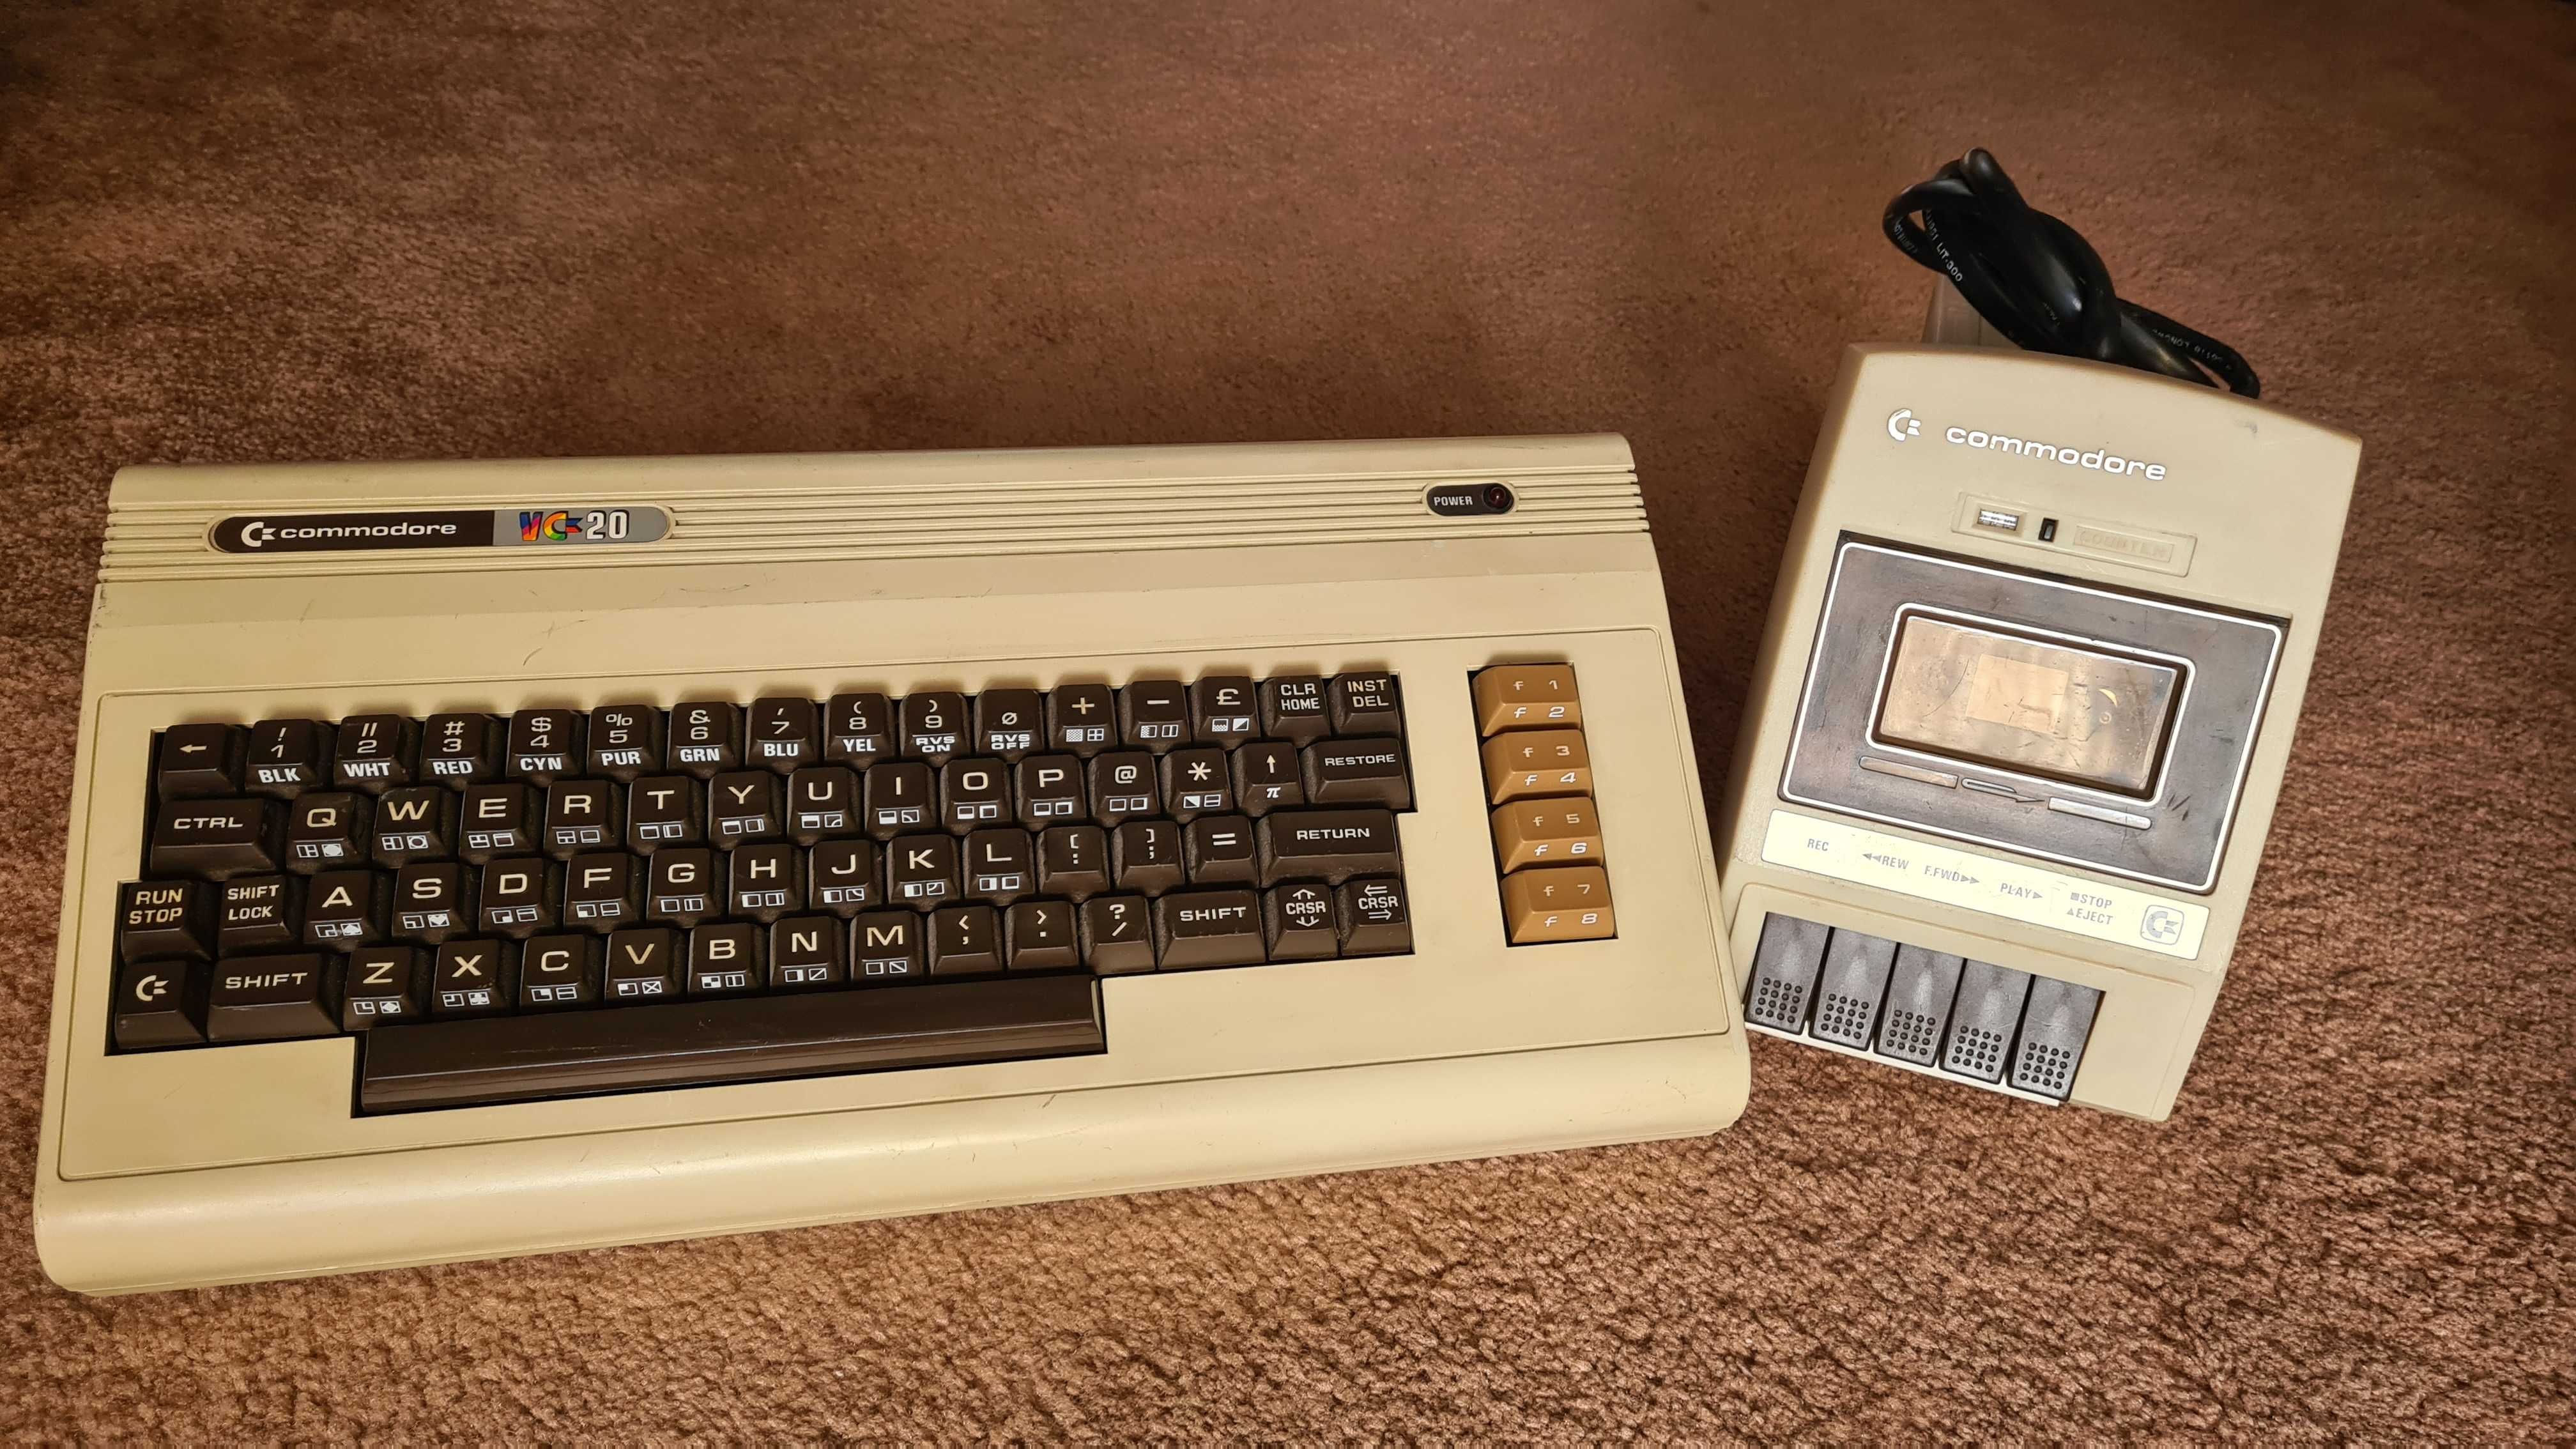 Commodore vic 20